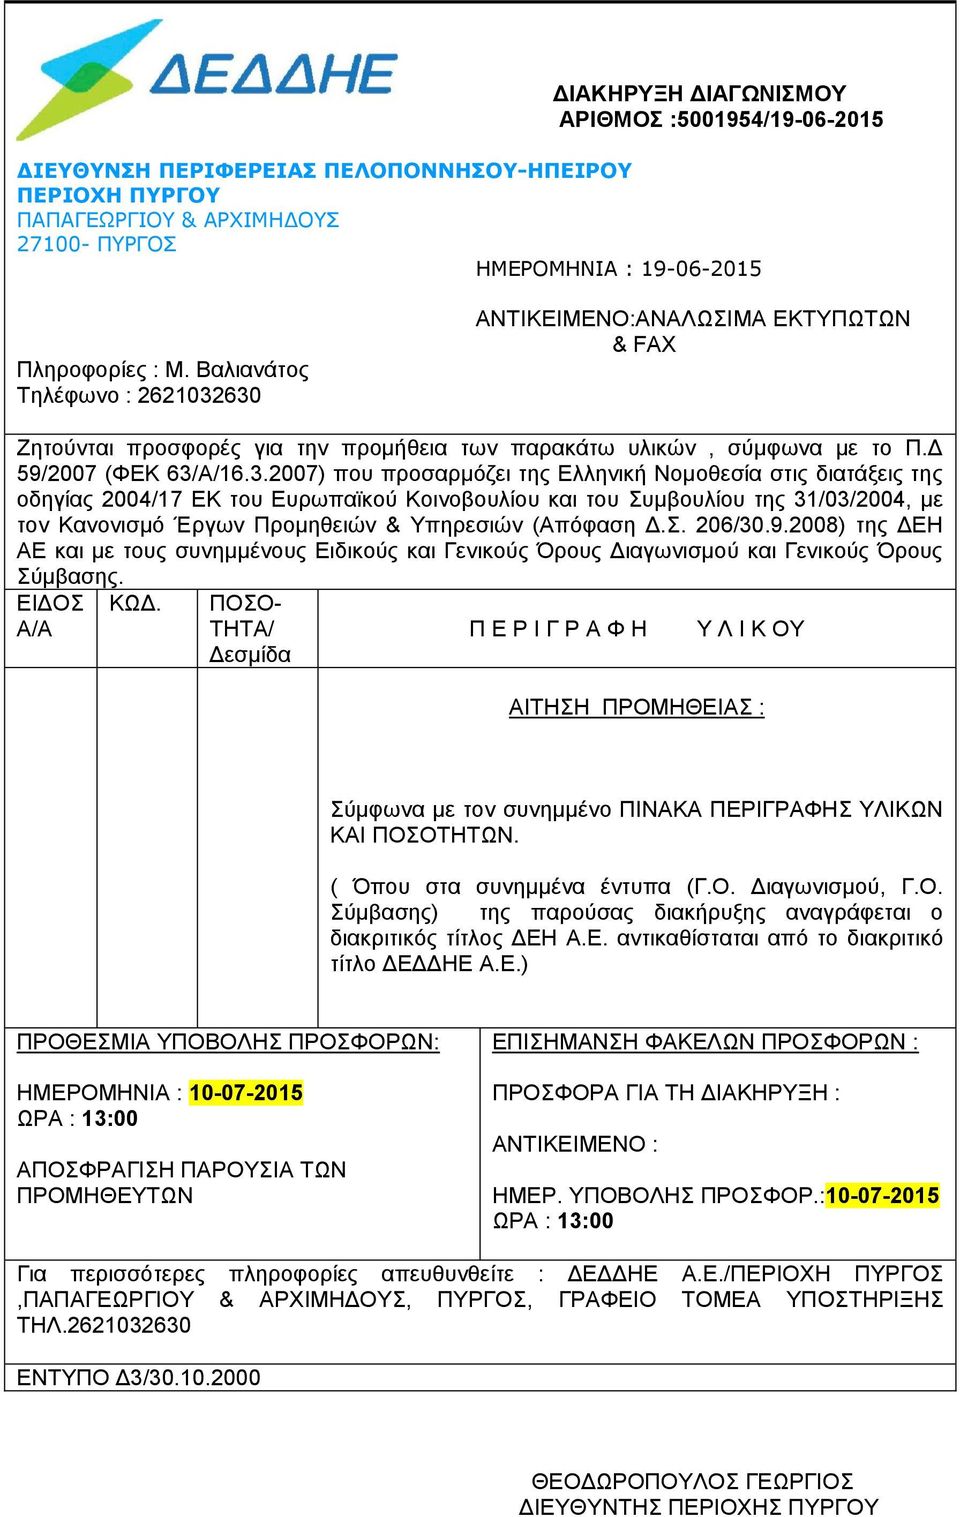 630 ΑΝΤΙΚΕΙΜΕΝΟ:ΑΝΑΛΩΣΙΜΑ ΕΚΤΥΠΩΤΩΝ & FAX Ζητούνται προσφορές για την προμήθεια των παρακάτω υλικών, σύμφωνα με το Π.Δ 59/2007 (ΦΕΚ 63/Α/16.3.2007) που προσαρμόζει της Ελληνική Νομοθεσία στις